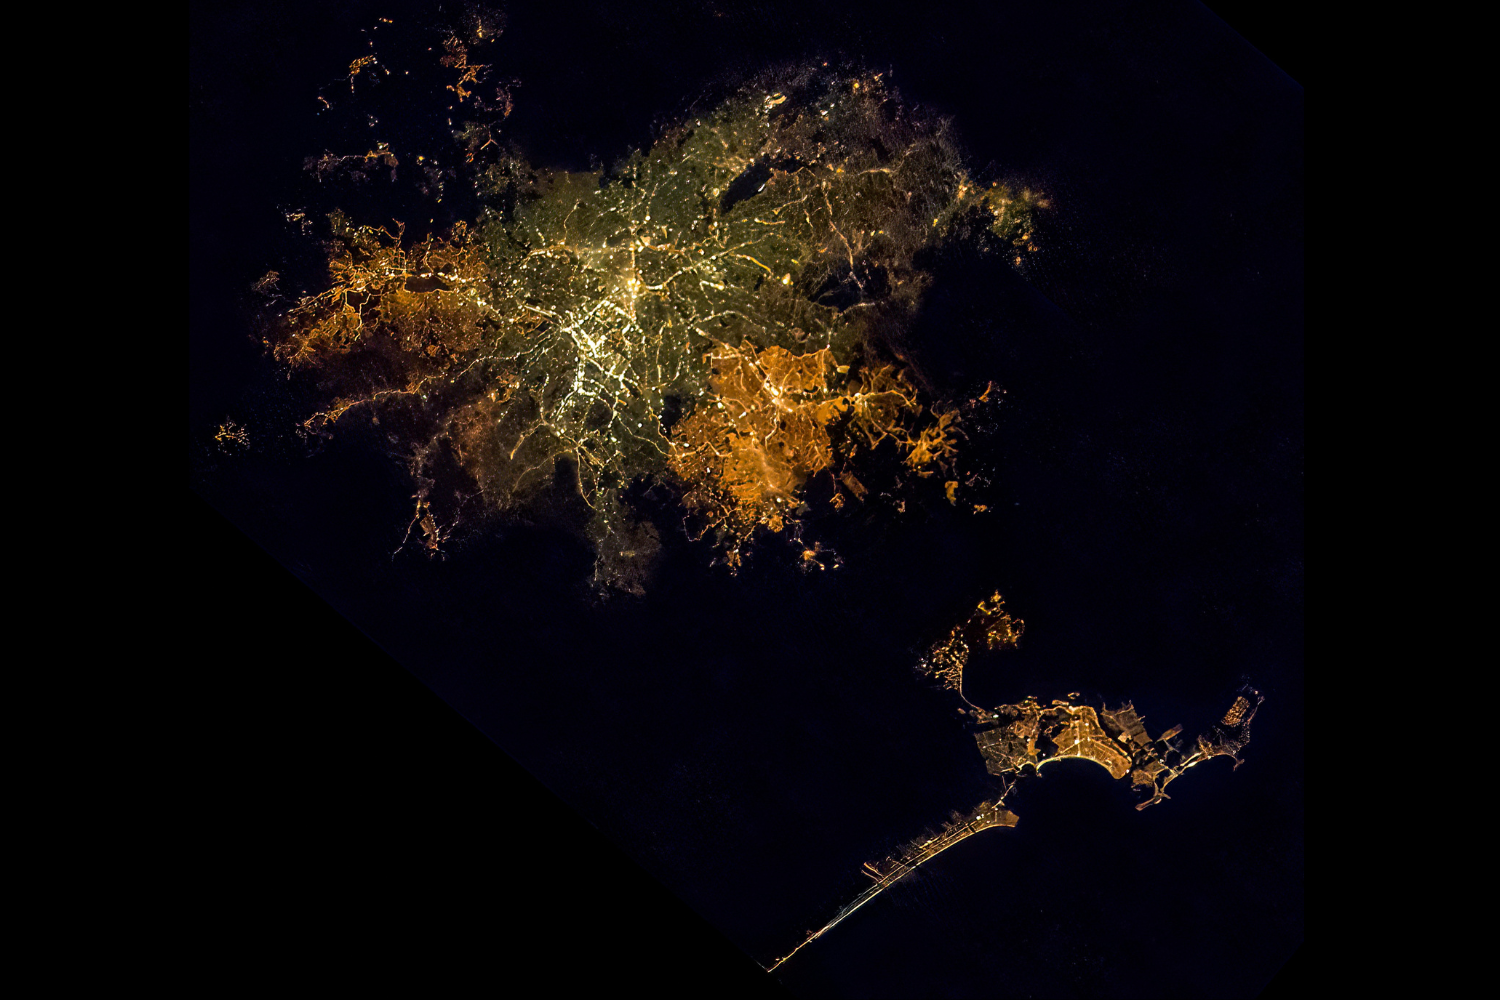 são paulo vista do espaço: veja imagem publicada por astronauta da nasa